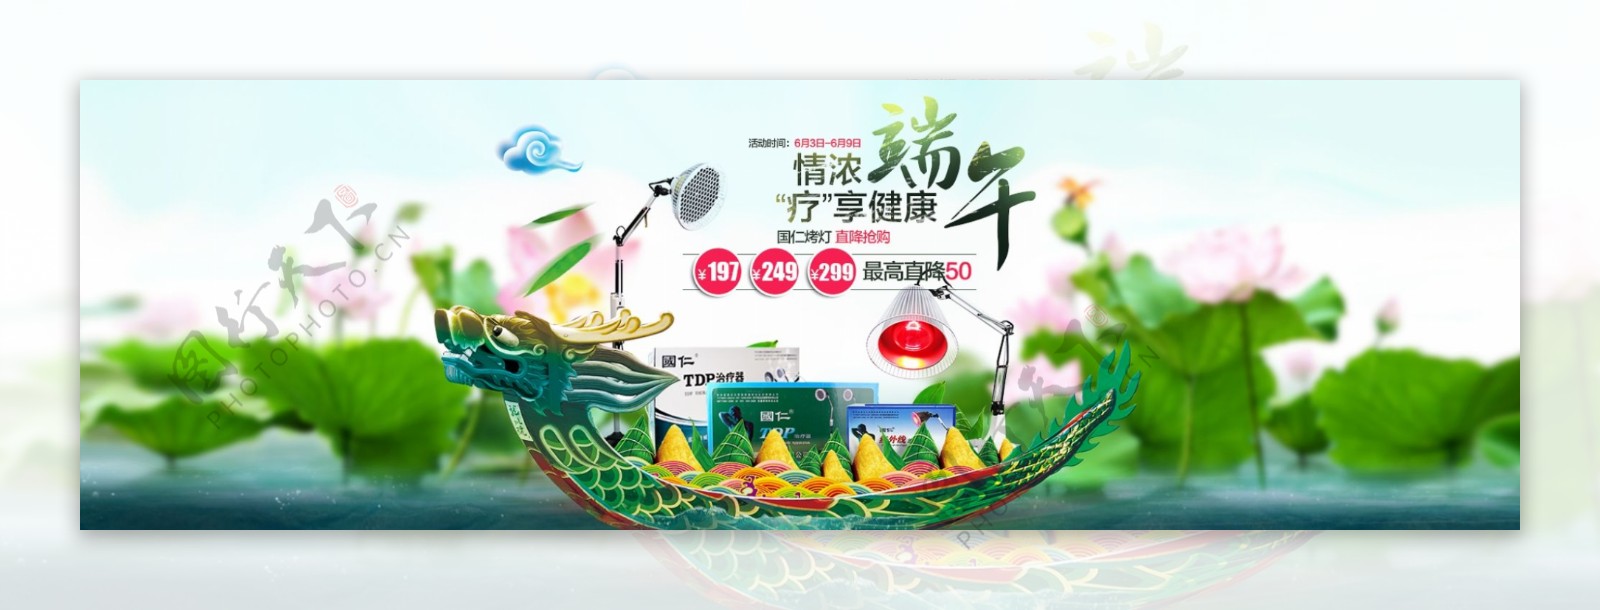 端午节banner淘宝天猫设计